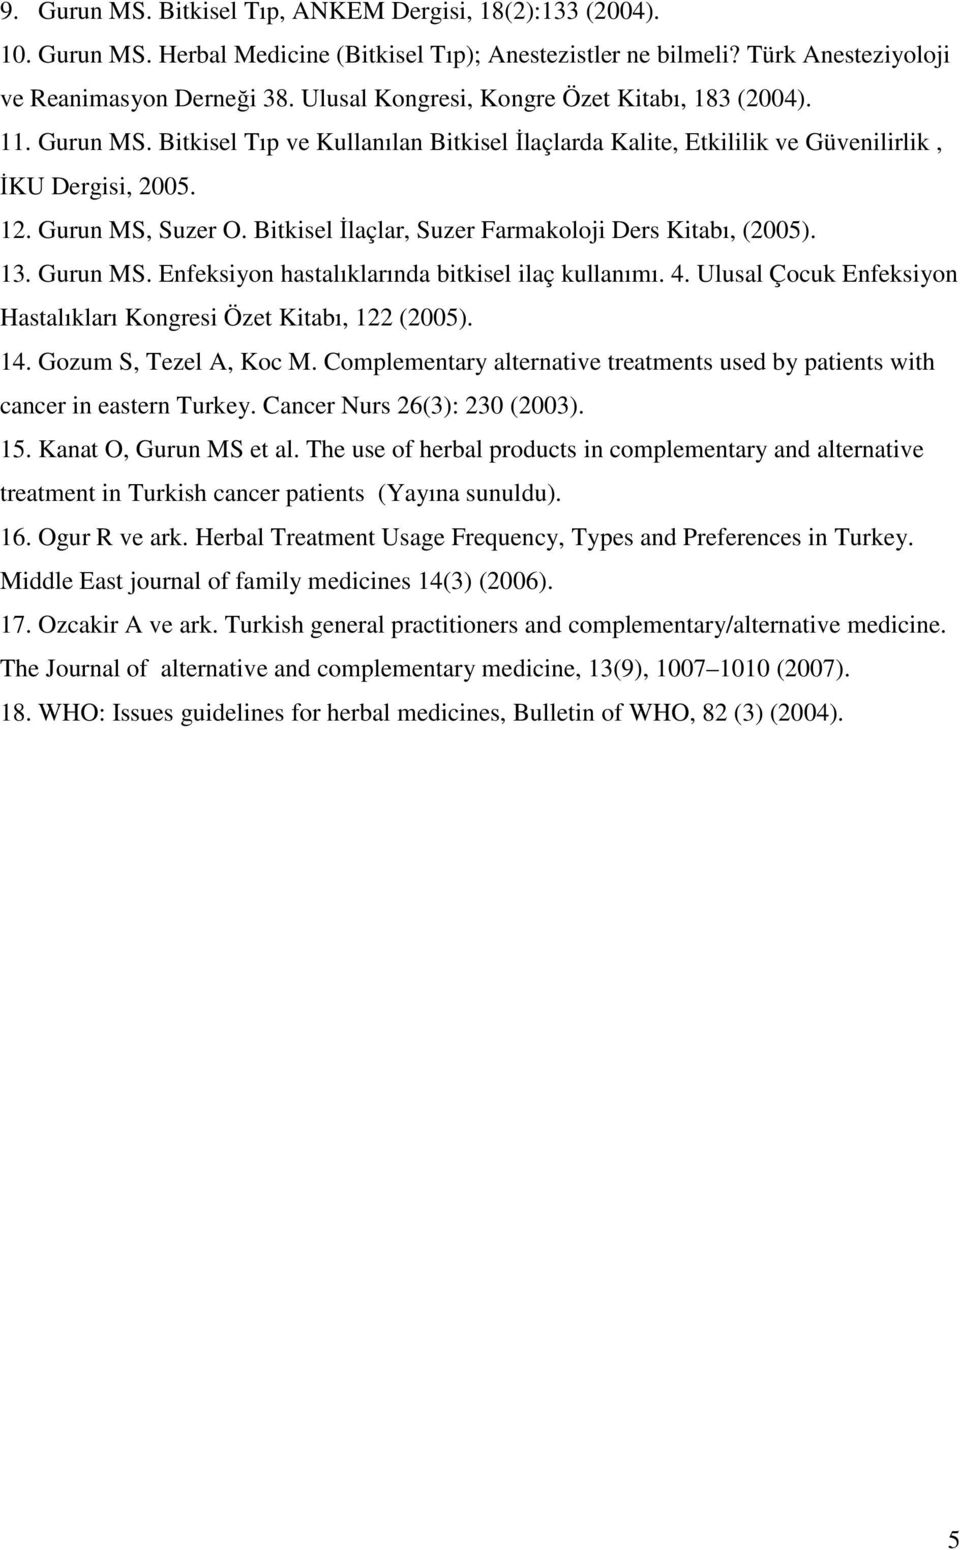 Bitkisel İlaçlar, Suzer Farmakoloji Ders Kitabı, (2005). 13. Gurun MS. Enfeksiyon hastalıklarında bitkisel ilaç kullanımı. 4. Ulusal Çocuk Enfeksiyon Hastalıkları Kongresi Özet Kitabı, 122 (2005). 14.